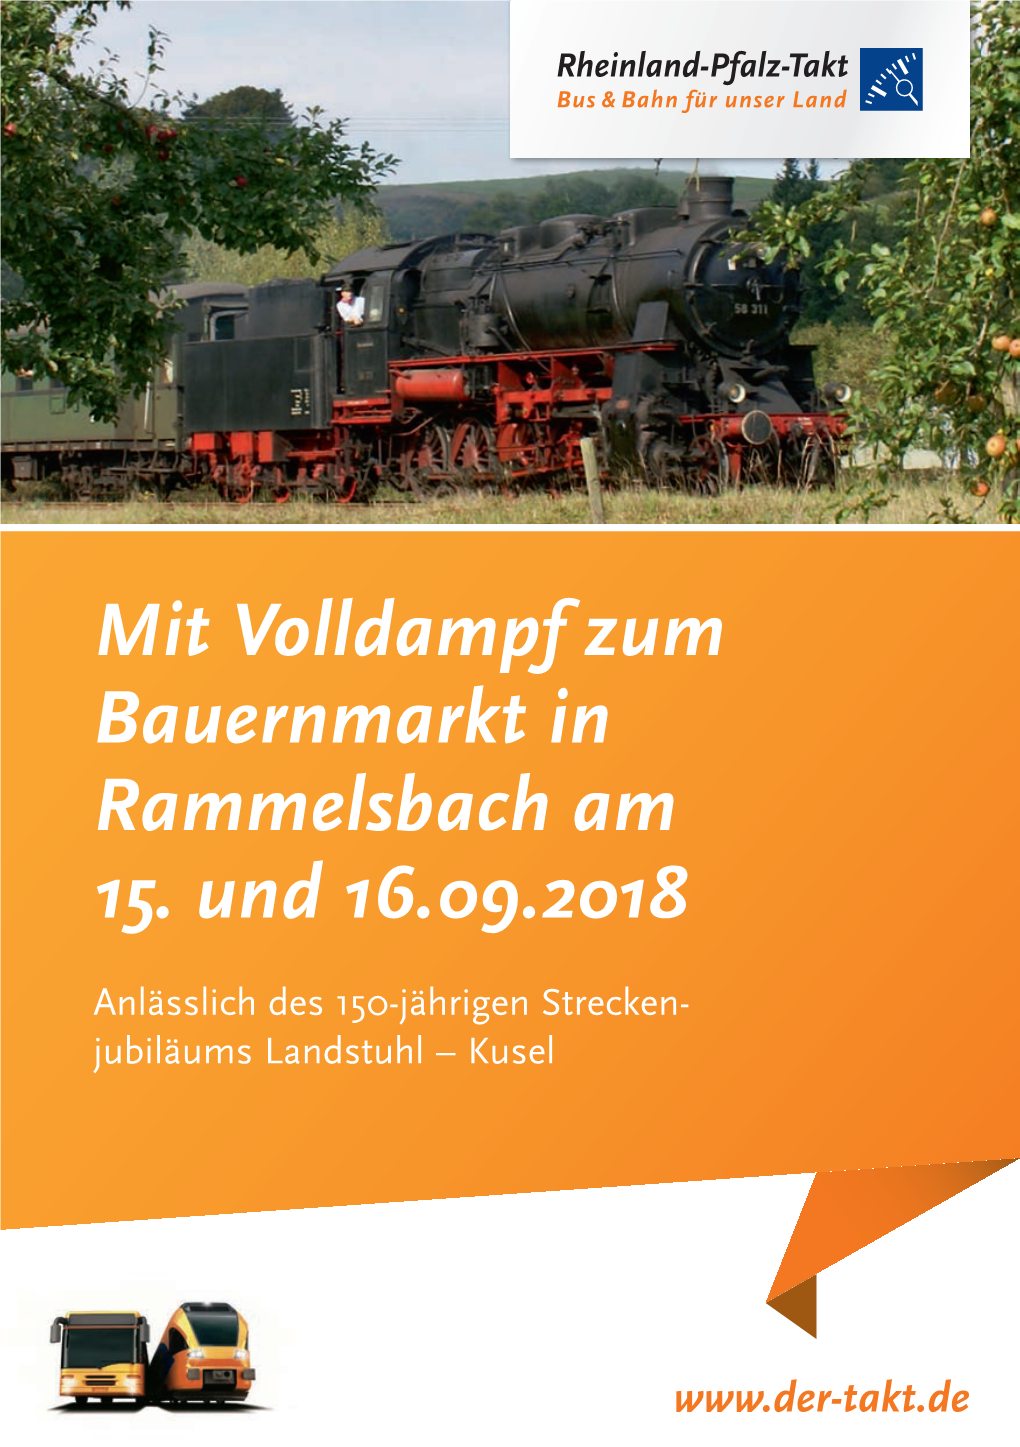 Mit Volldampf Zum Bauernmarkt in Rammelsbach Am 15. Und 16.09.2018